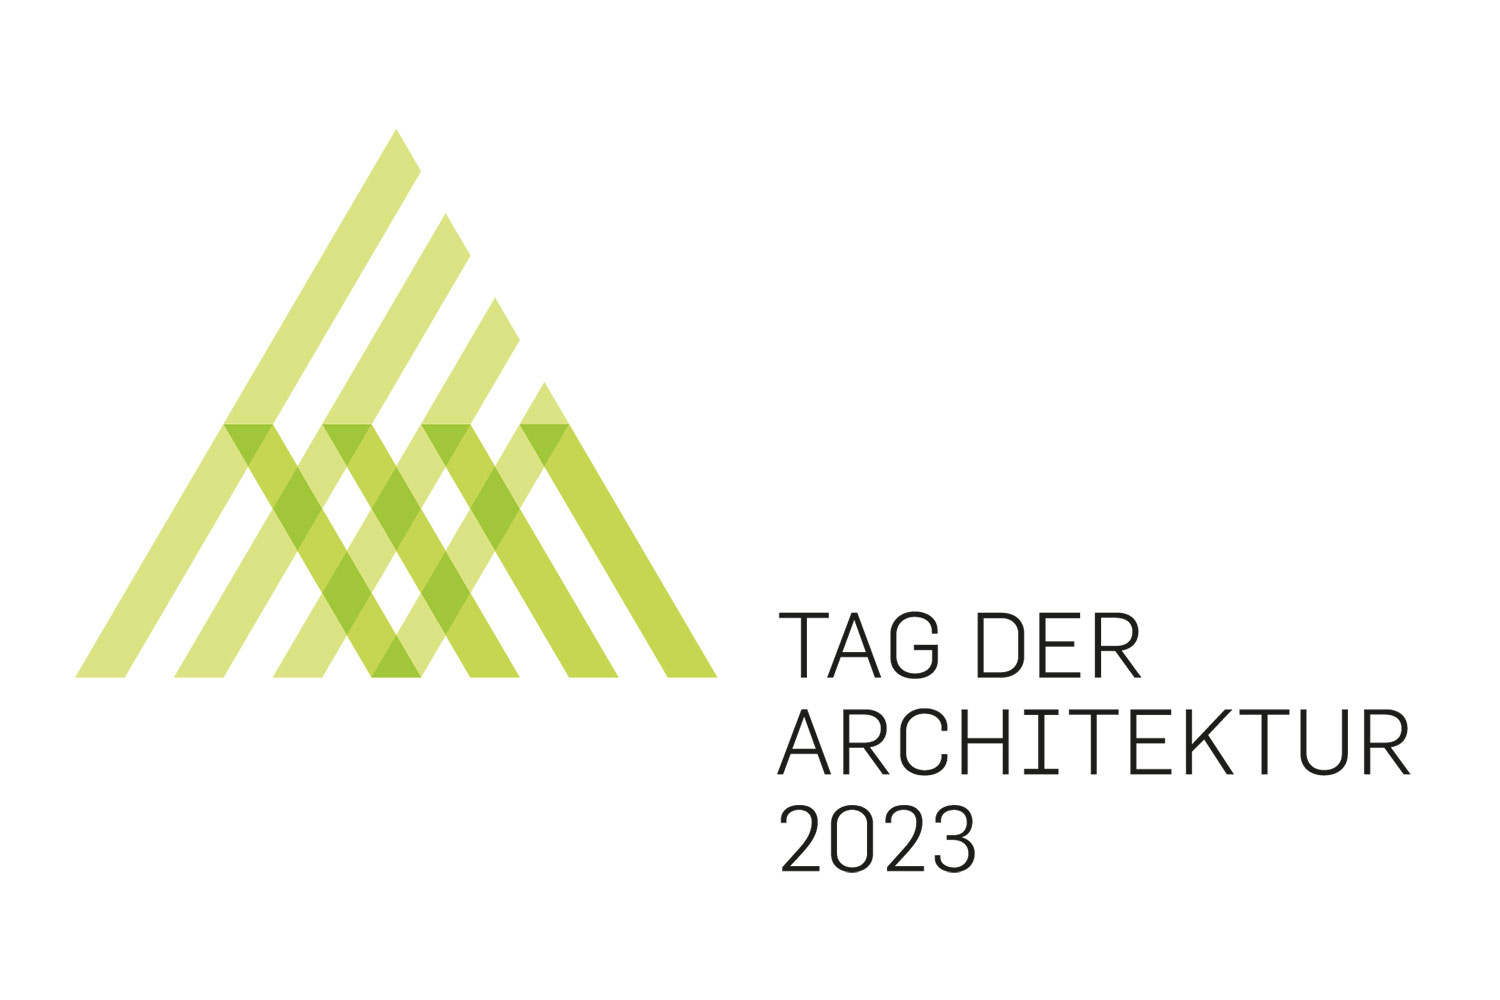 Tag der Architektur 2023 in Thüringen, Logo